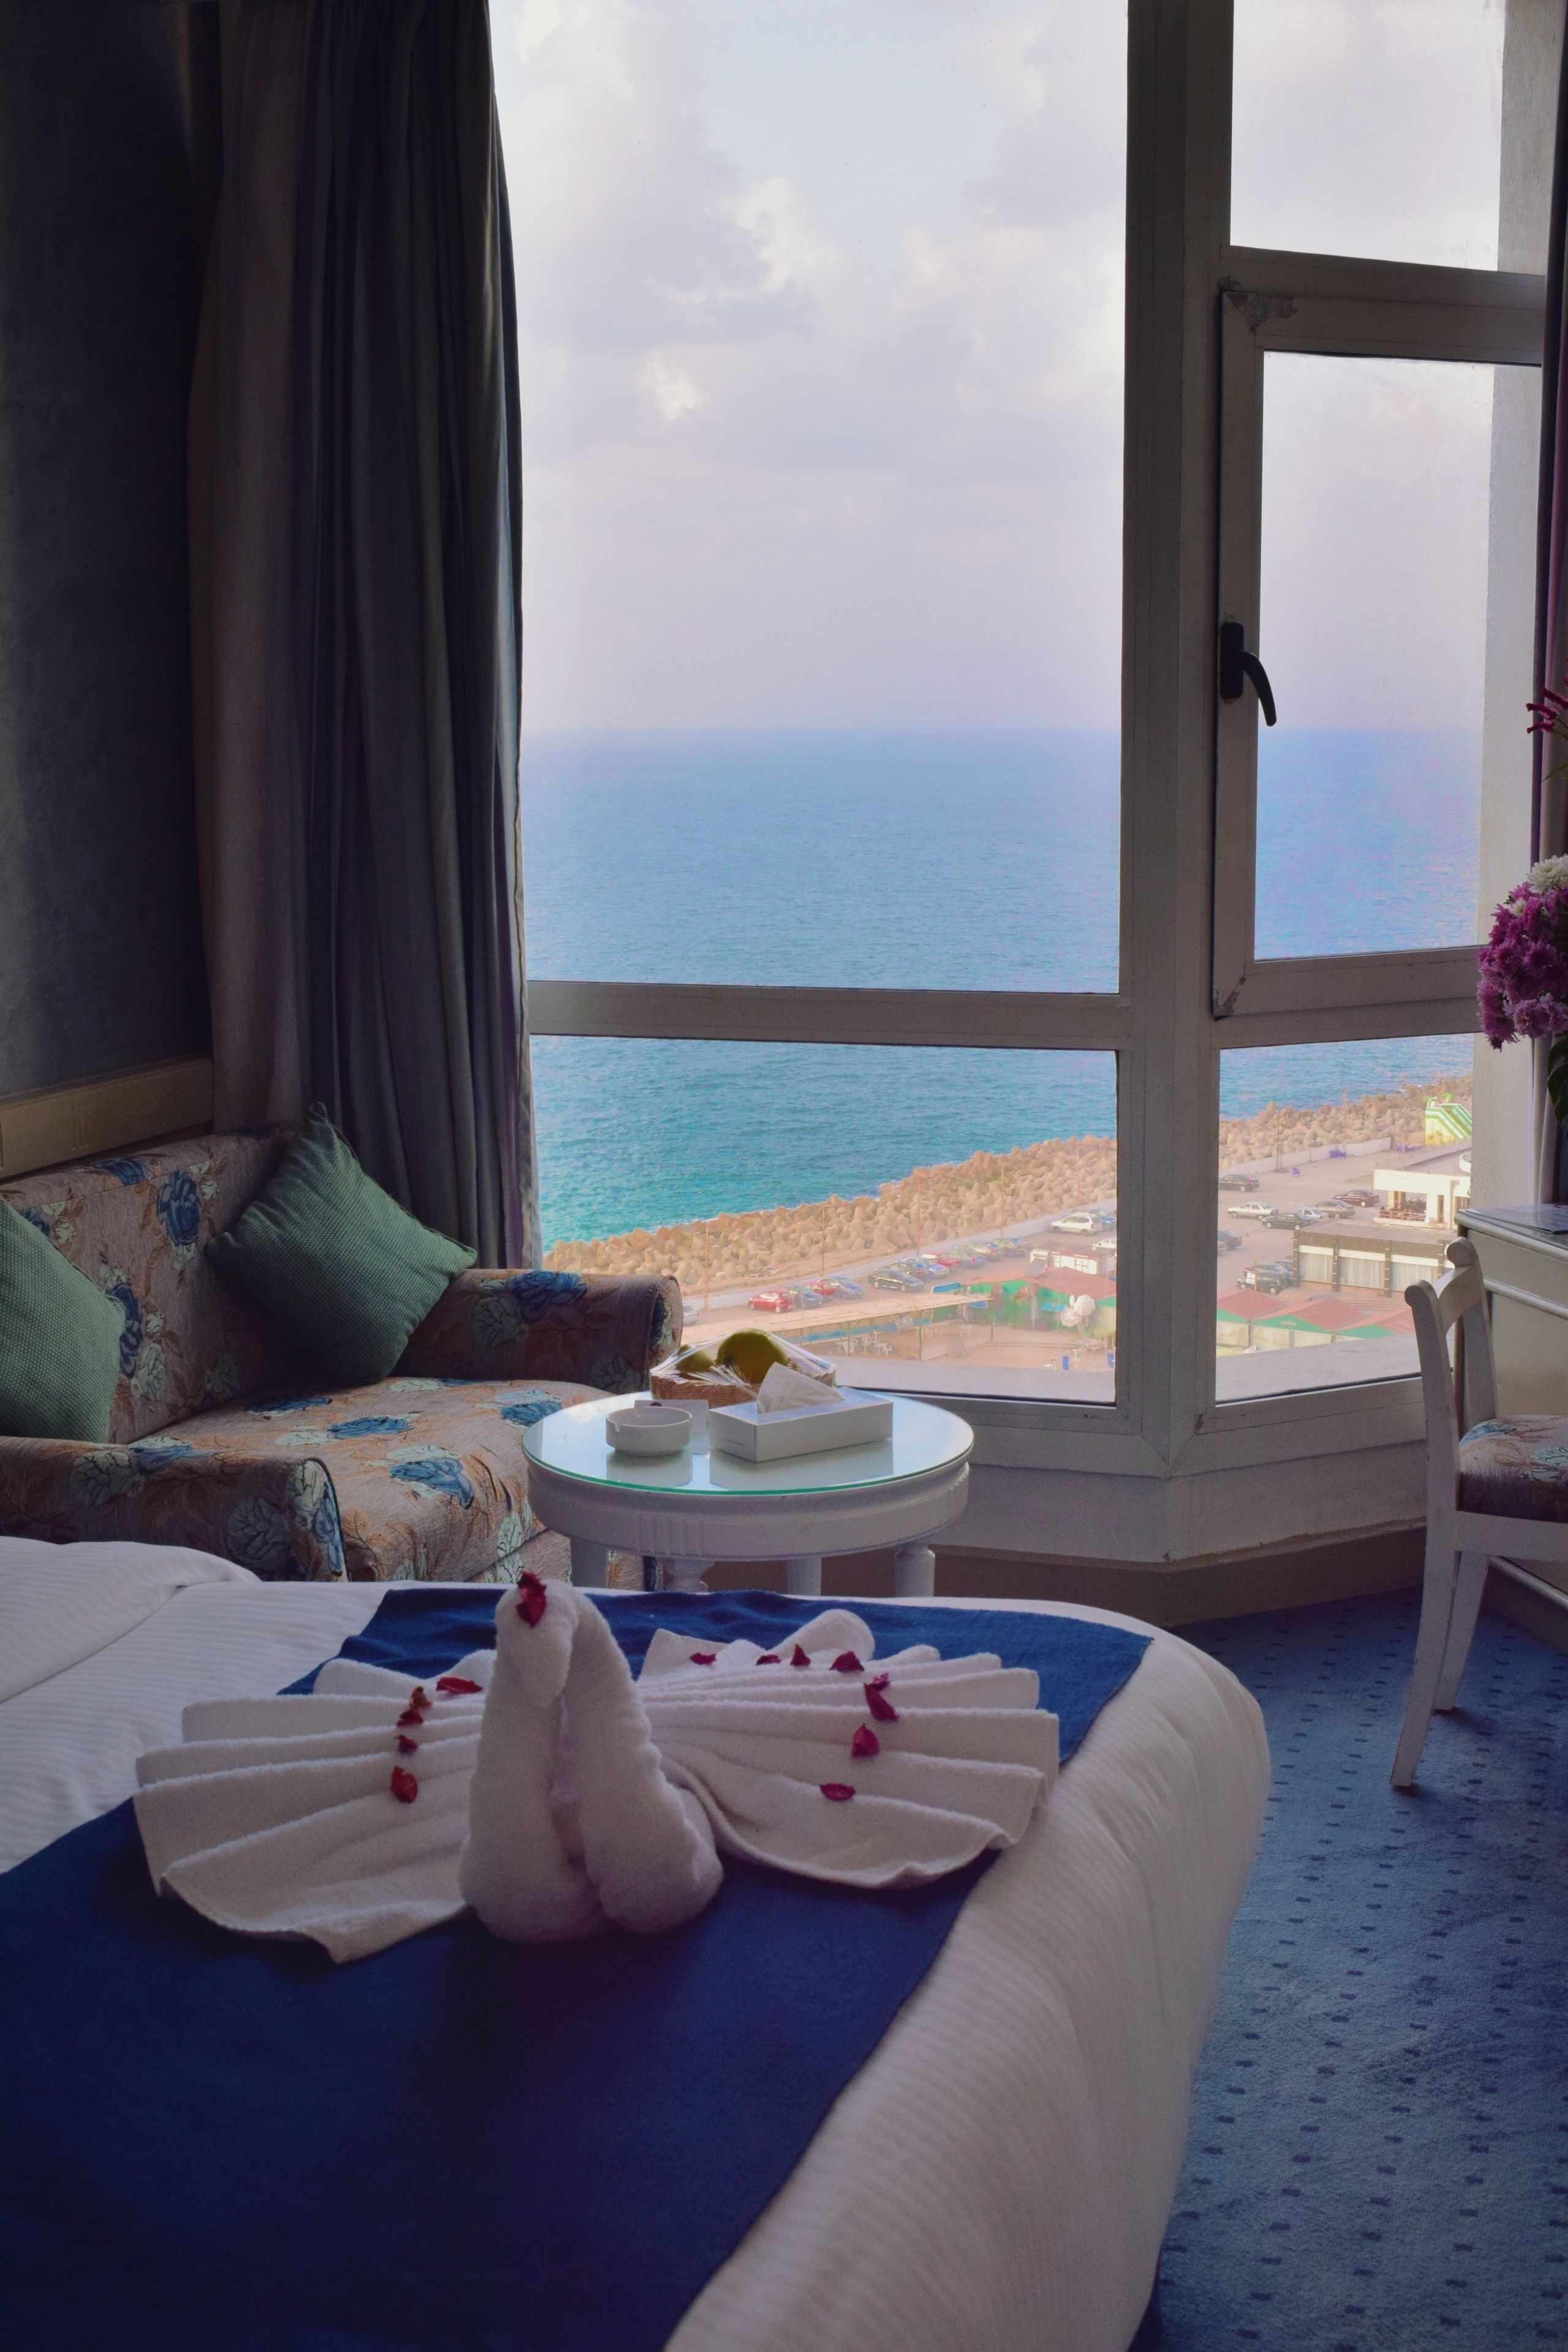 Romance Alexandria Corniche Hotel